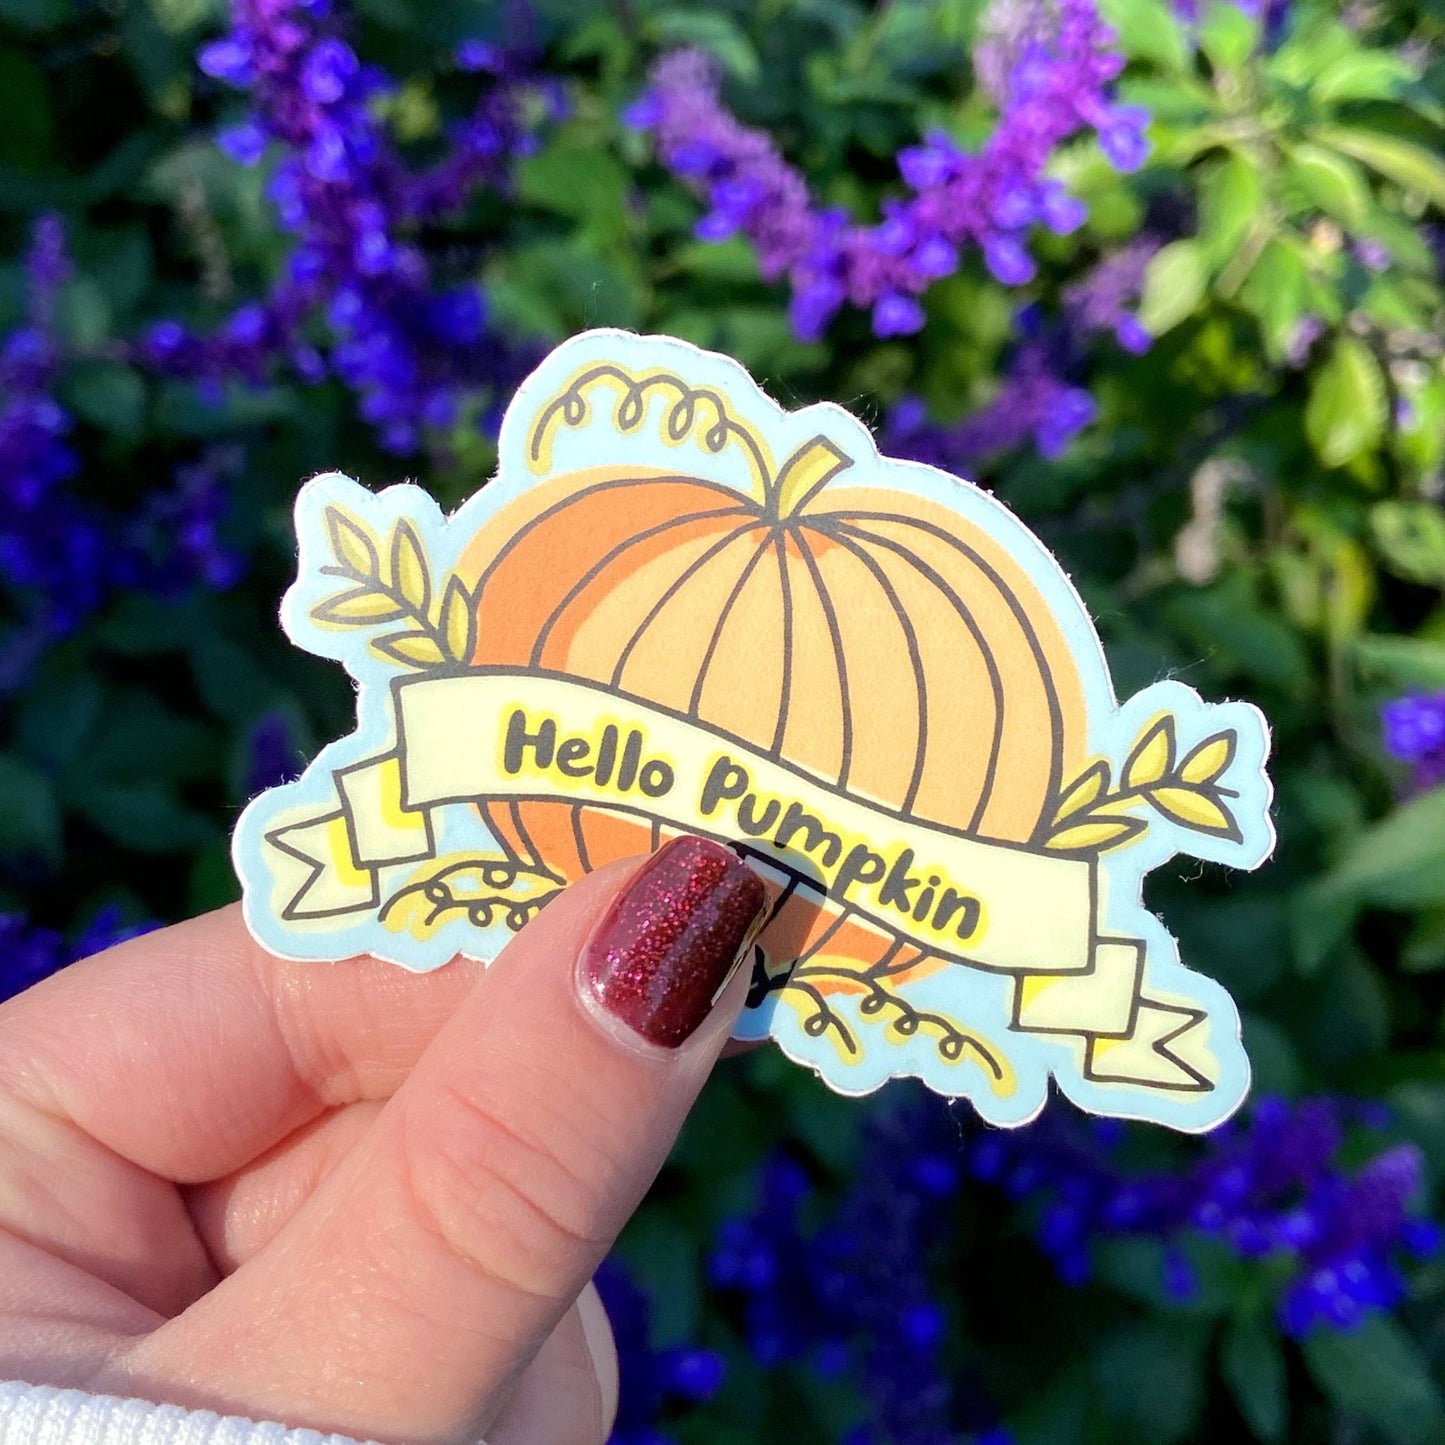 Hello Pumpkin Sticker Harvest Moon Gemz